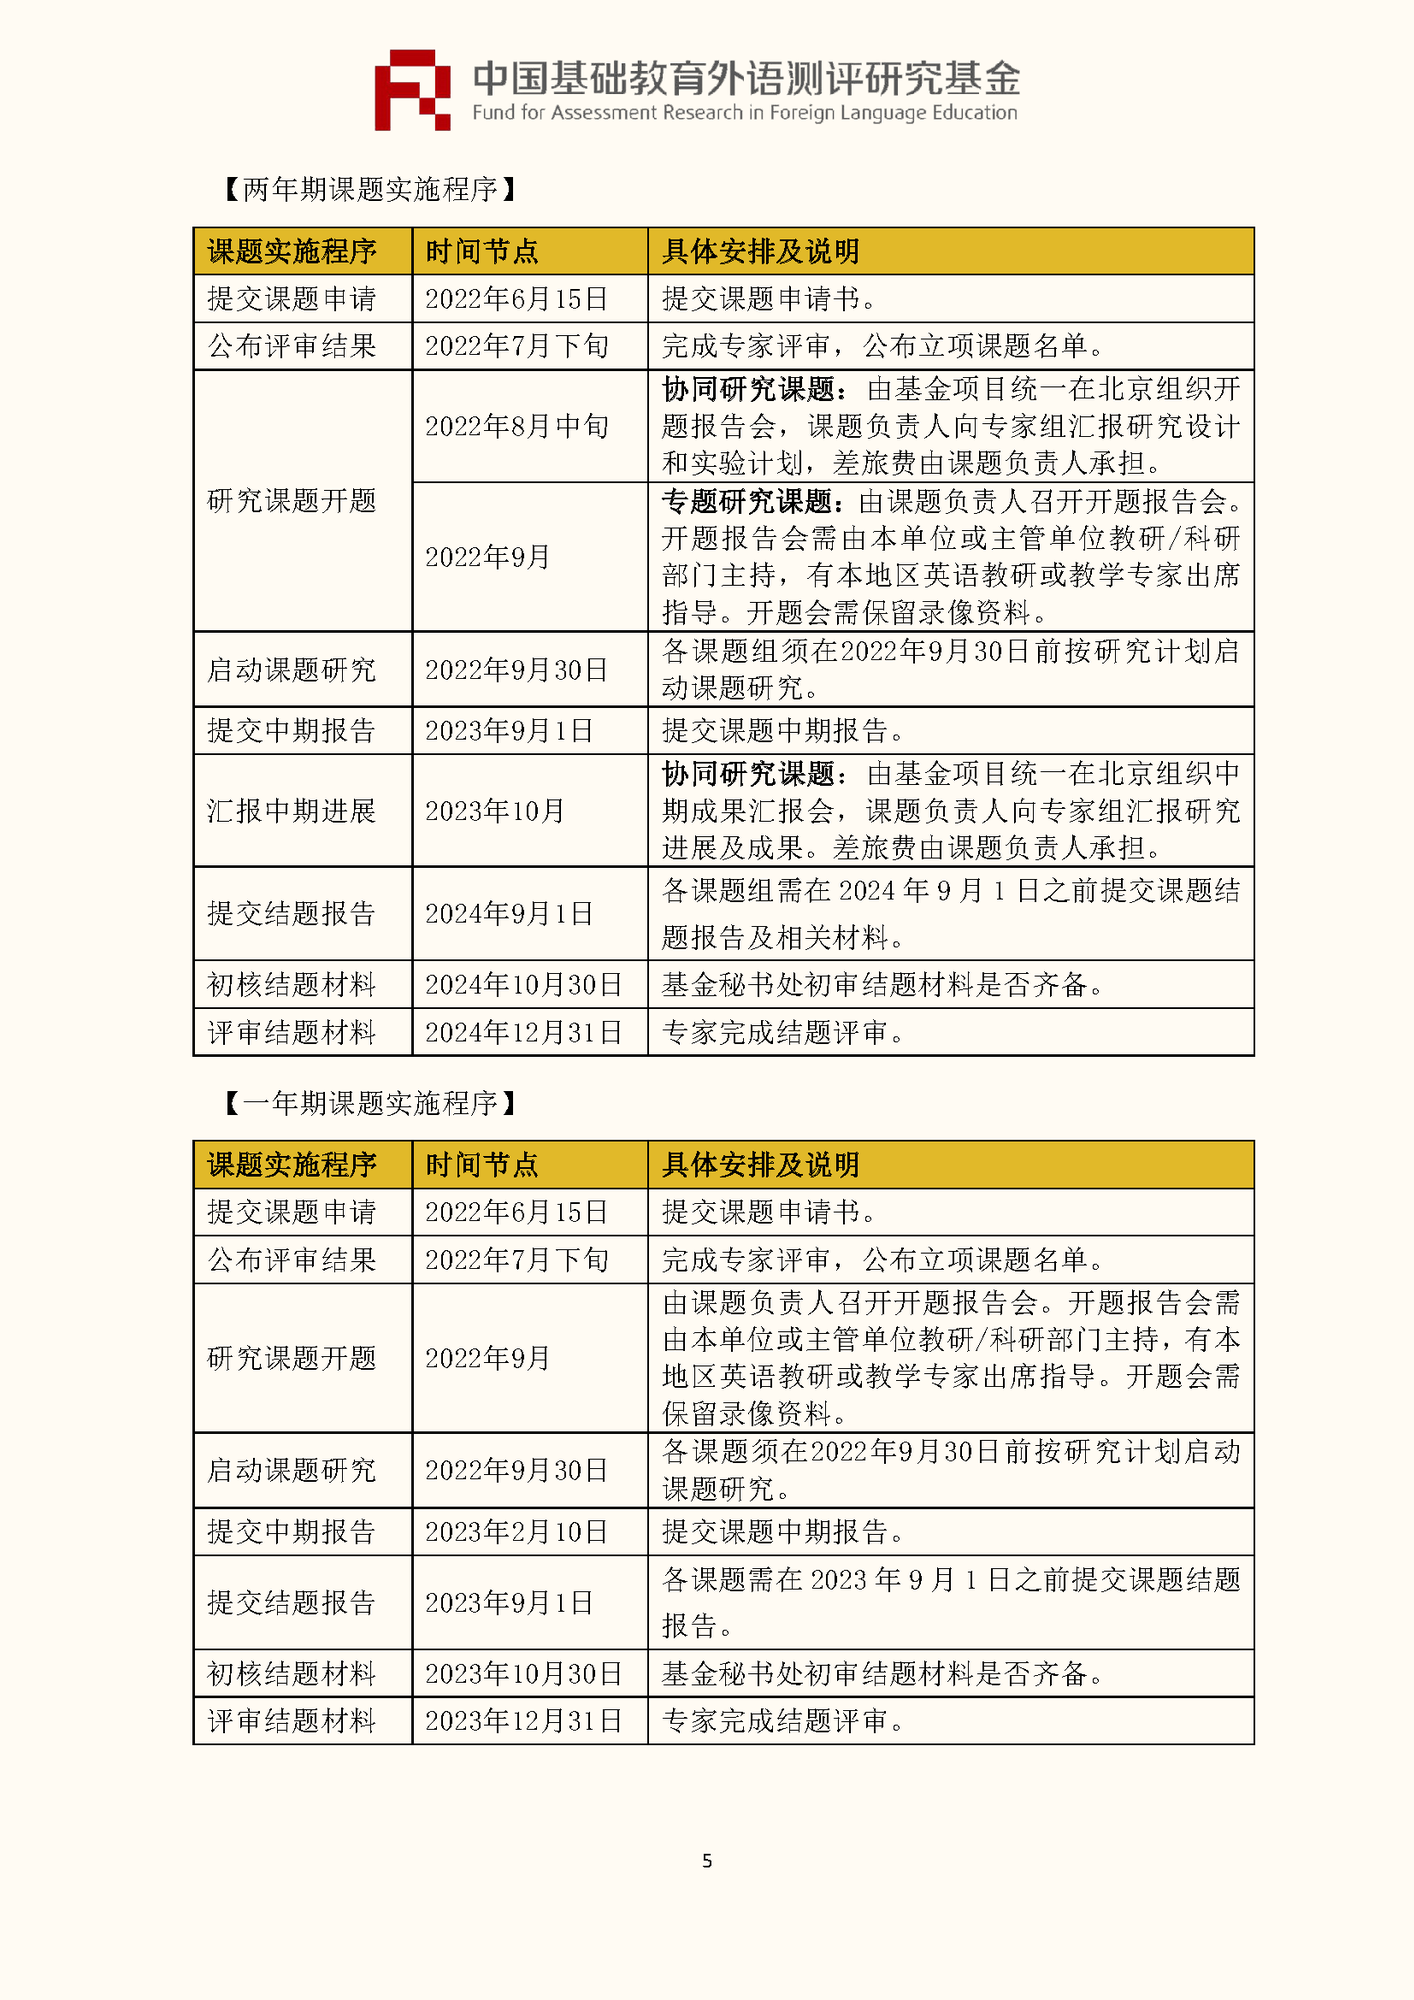 ”中国基础教育外语测评研究基金“项目第四期课题申报指南_页面_07